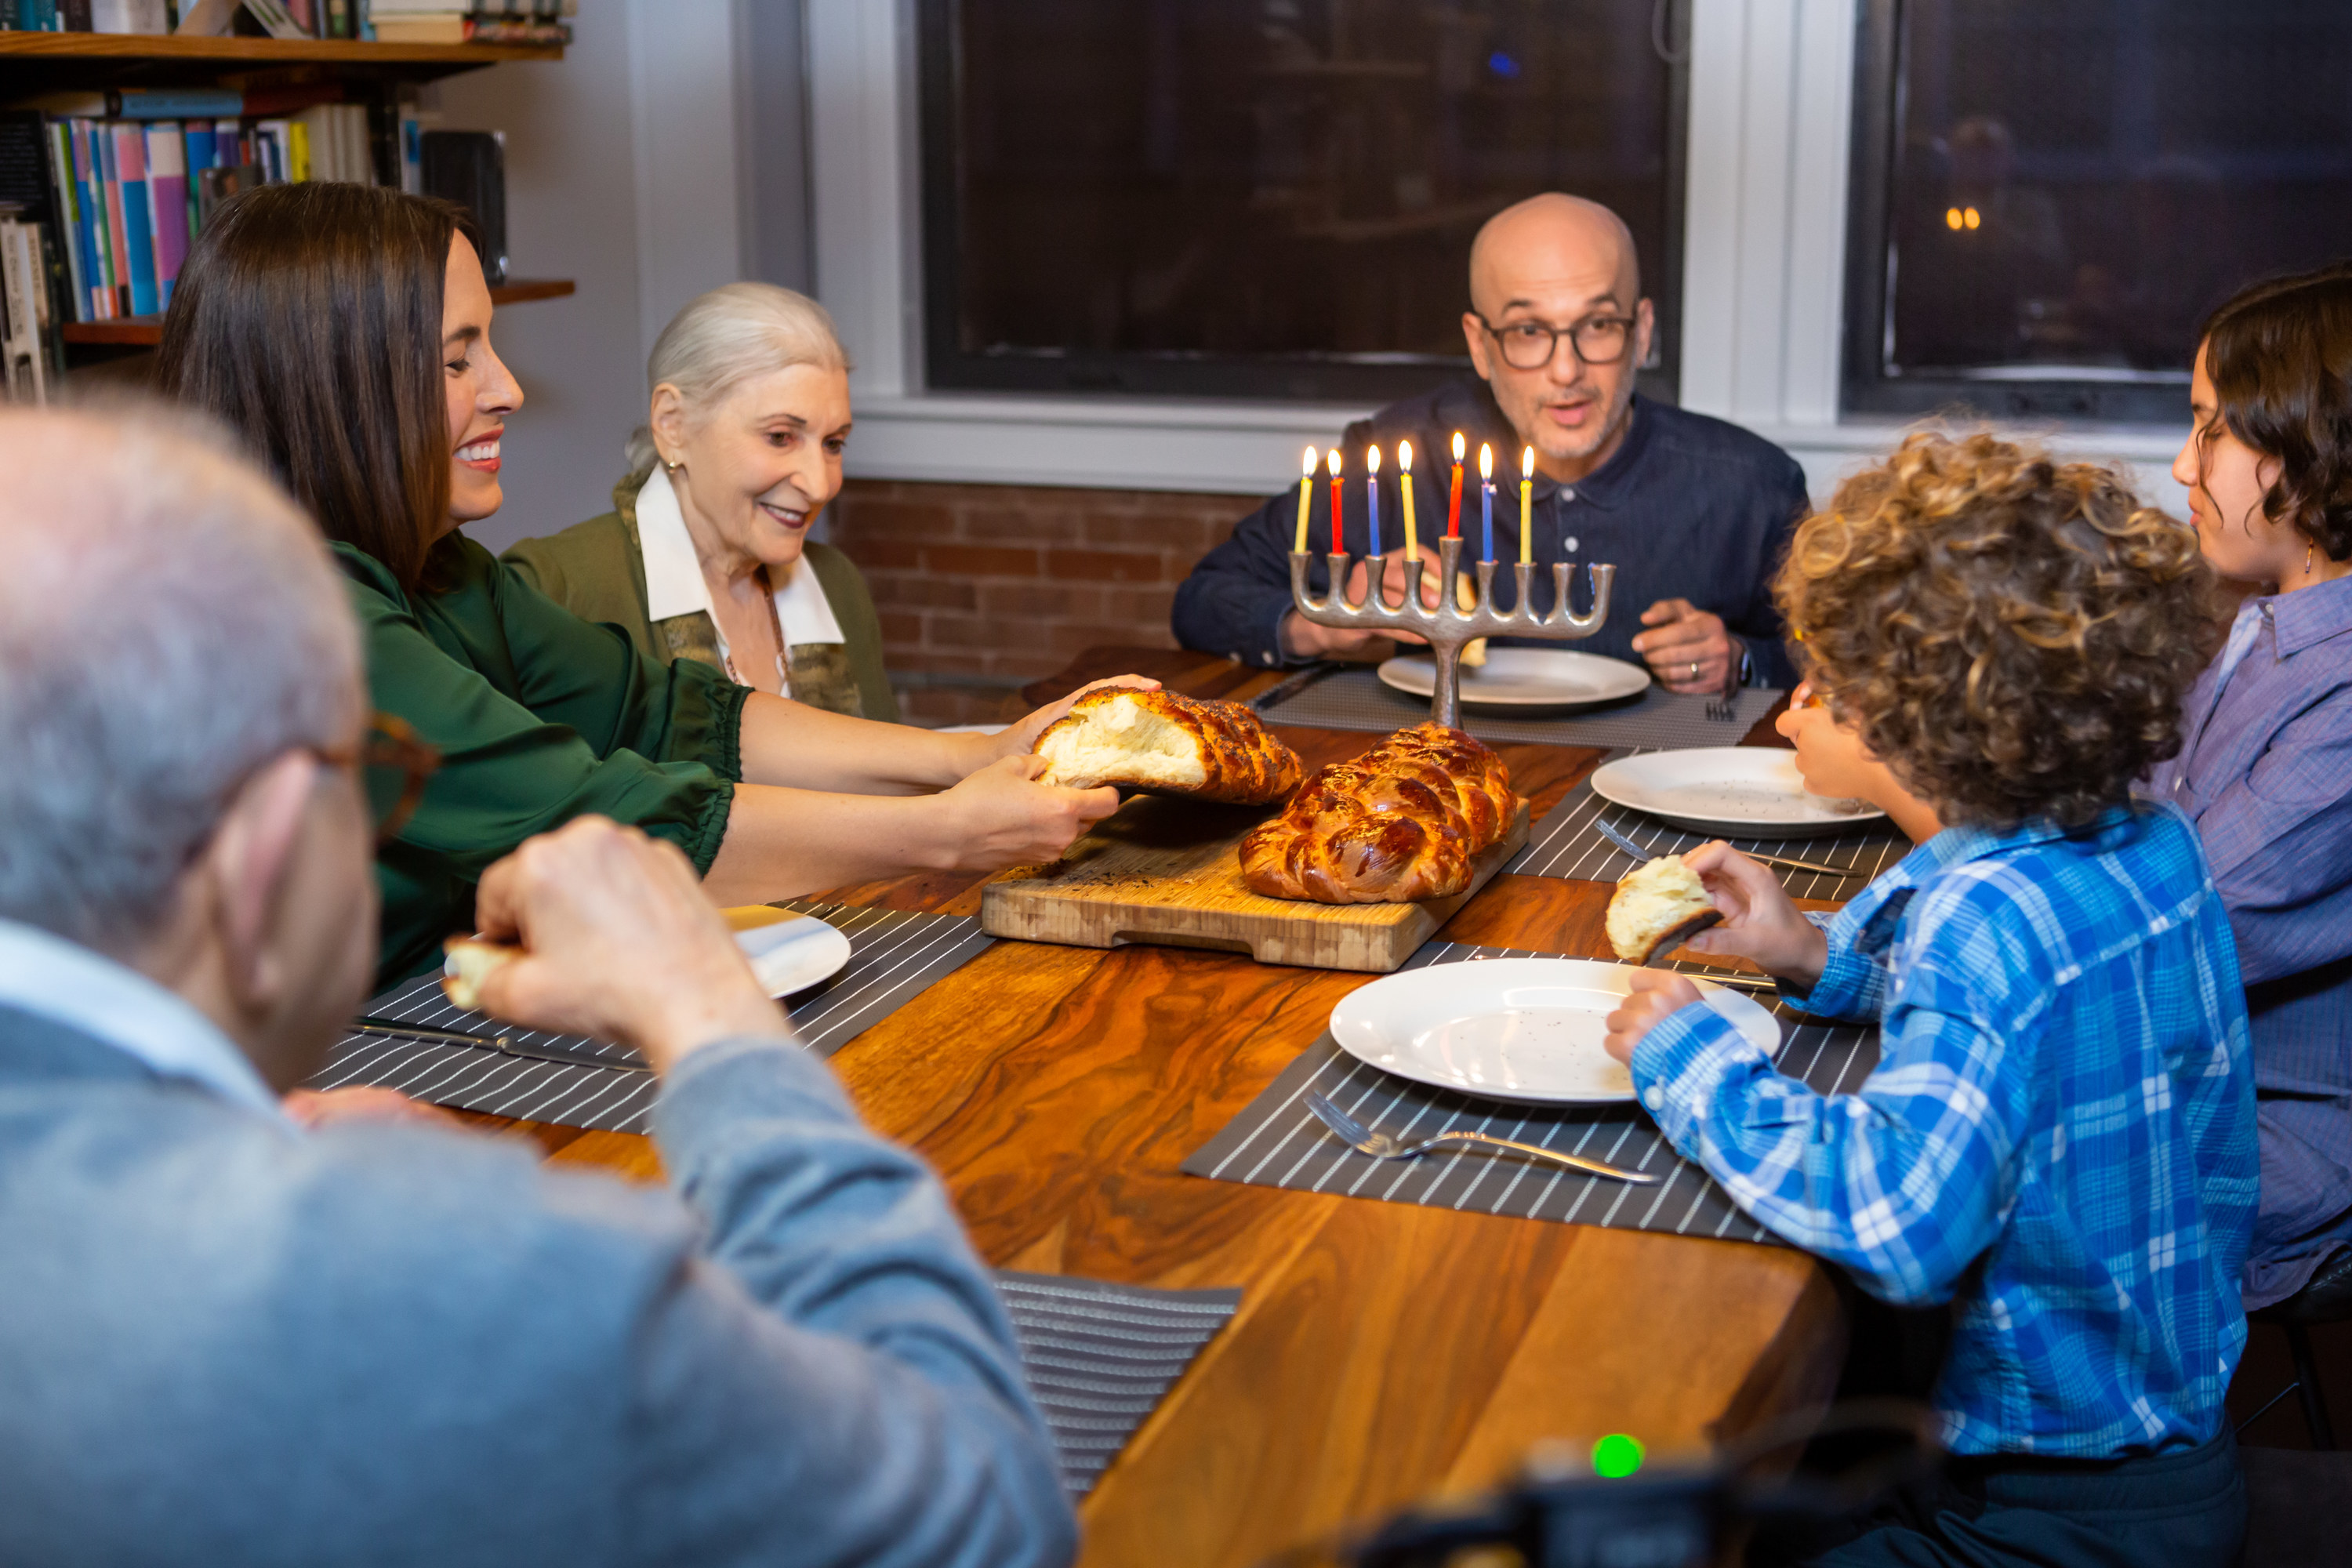 A mother tears challah while her family enjoys the Hanukkah festivities